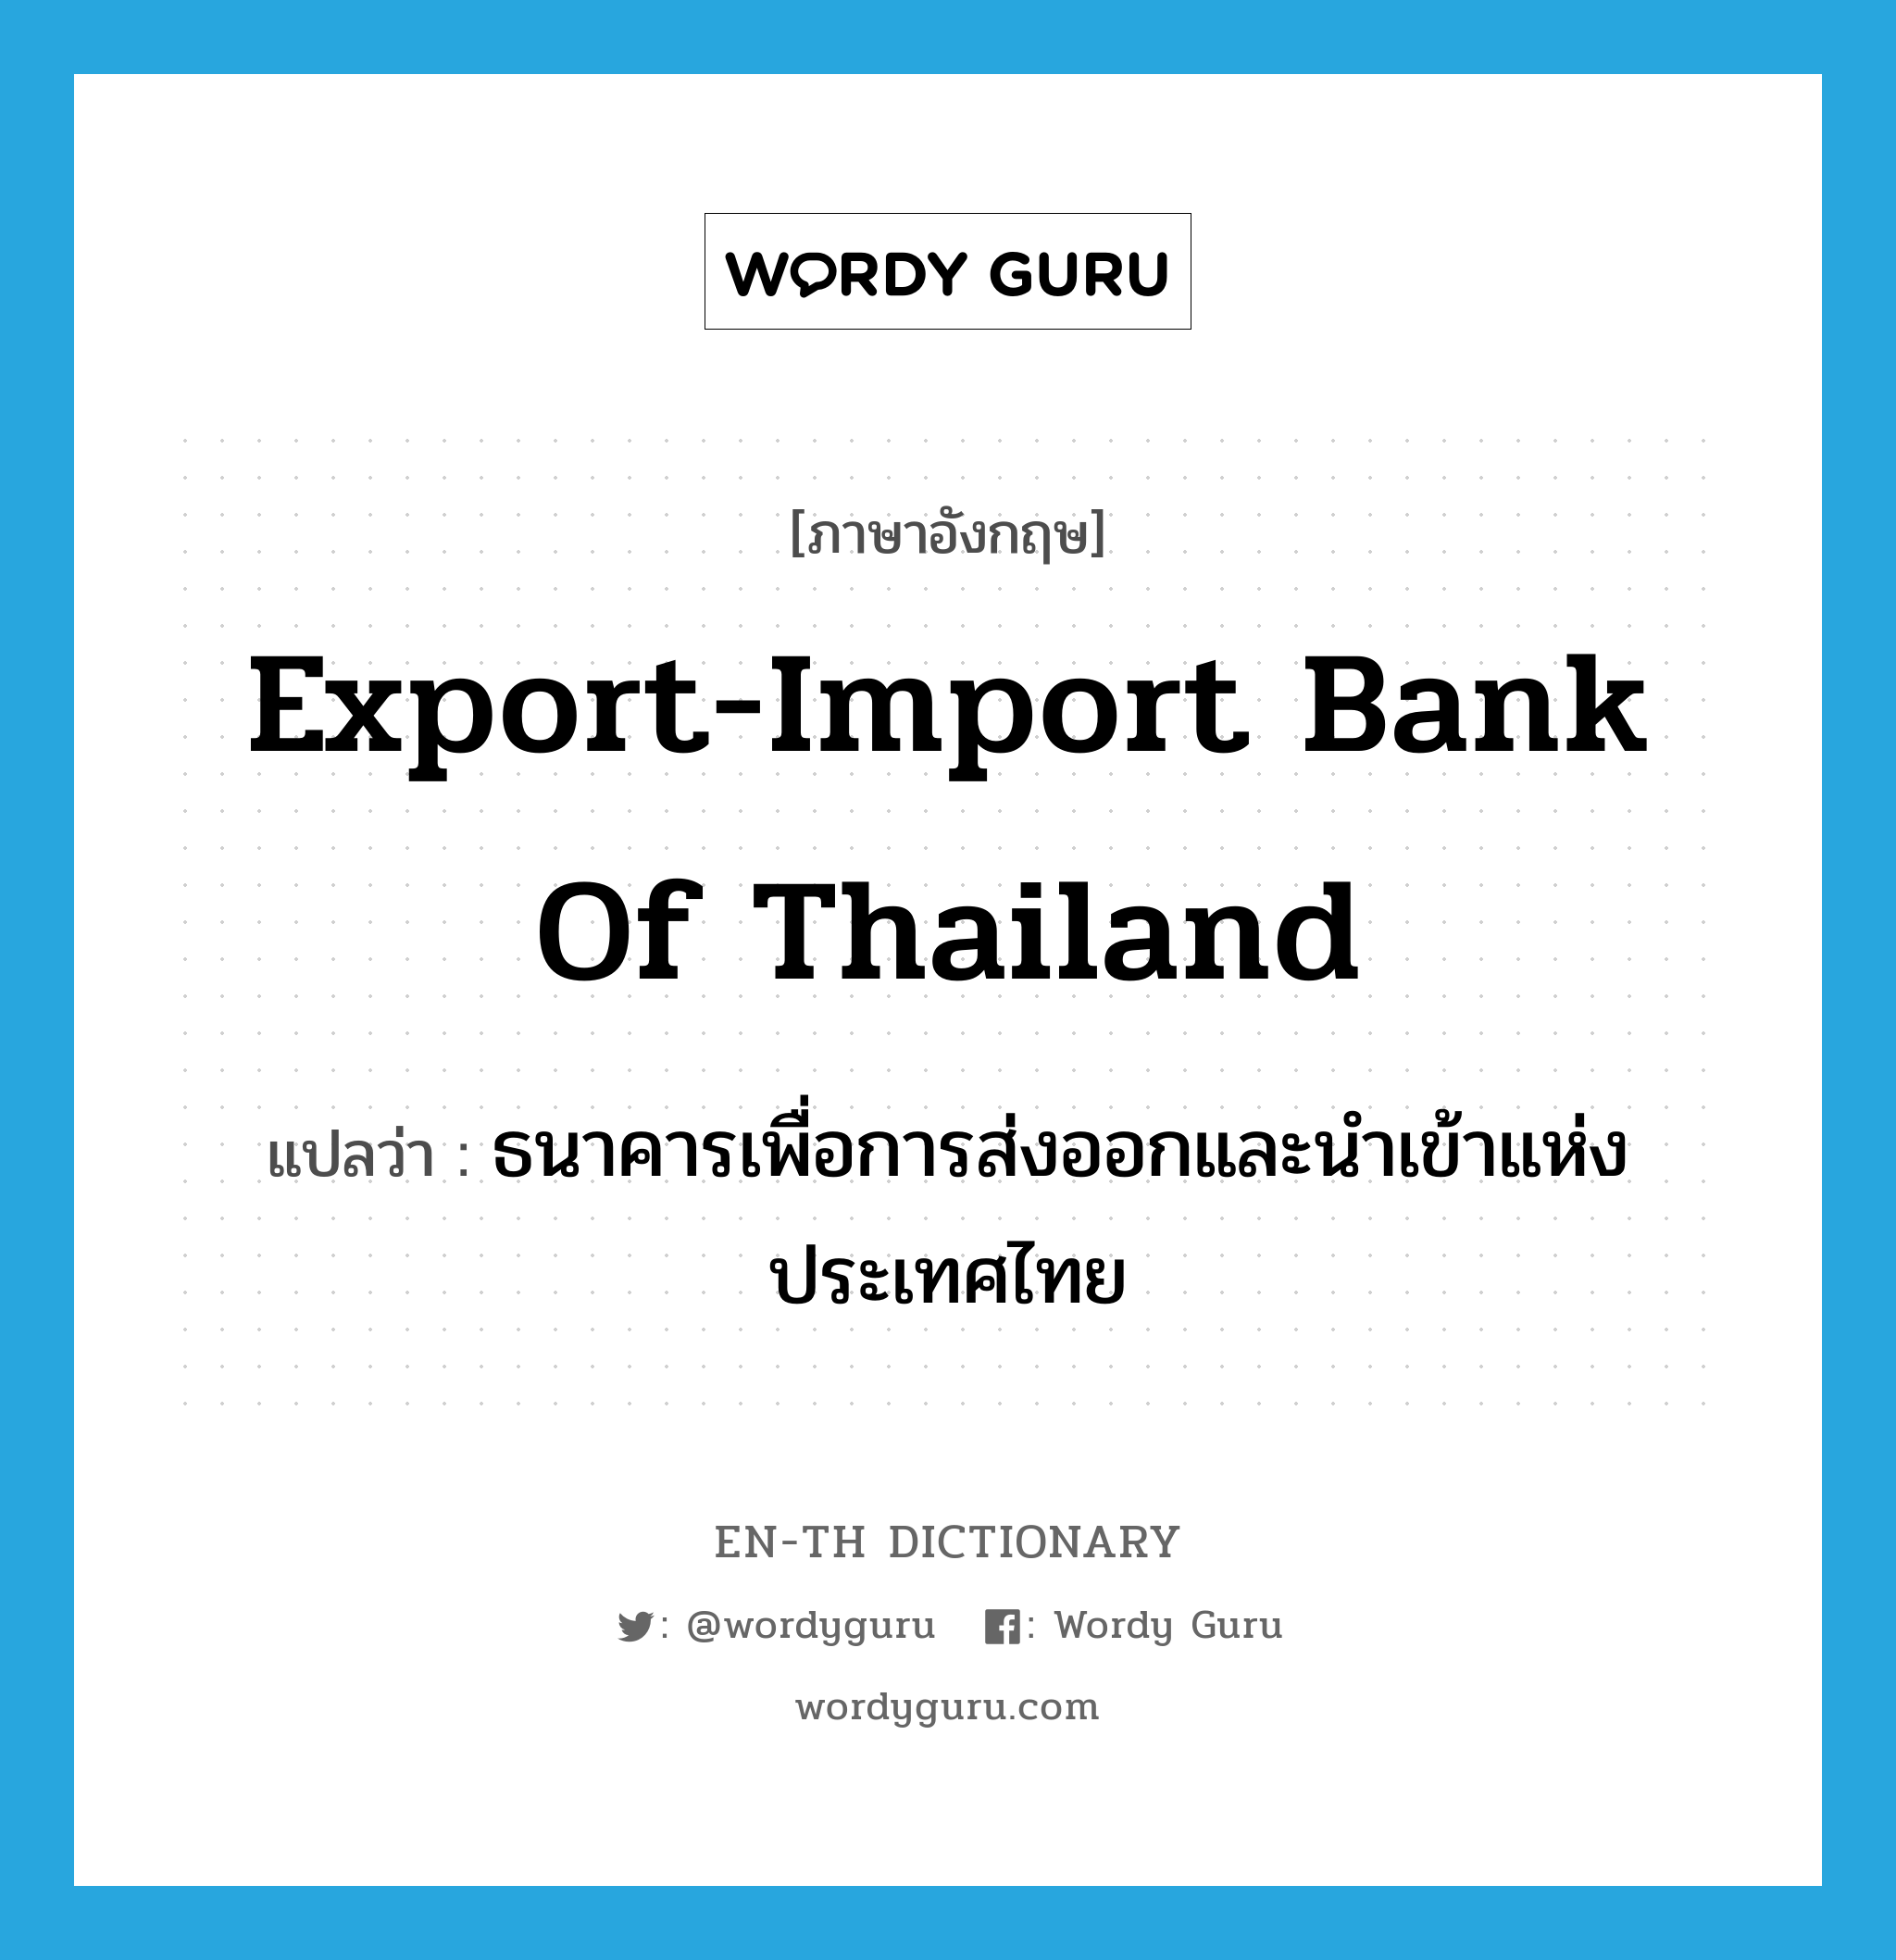 ธนาคารเพื่อการส่งออกและนำเข้าแห่งประเทศไทย ภาษาอังกฤษ?, คำศัพท์ภาษาอังกฤษ ธนาคารเพื่อการส่งออกและนำเข้าแห่งประเทศไทย แปลว่า Export-Import Bank of Thailand ประเภท N หมวด N